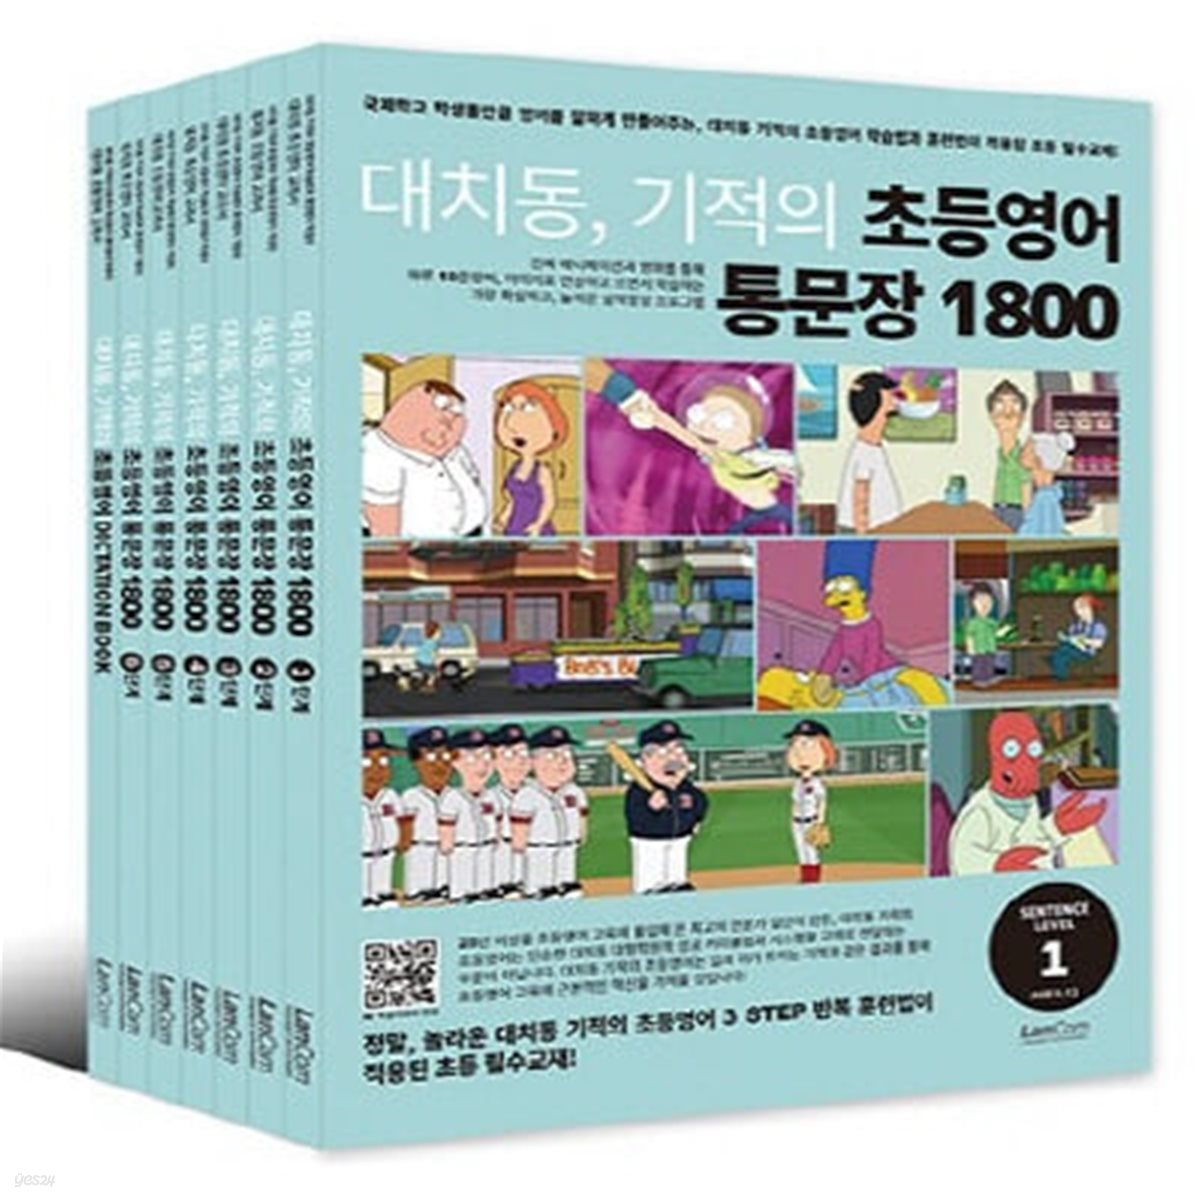 대치동 기적의 초등영어 통문장 1800 시리즈 세트 (전6권+부록)